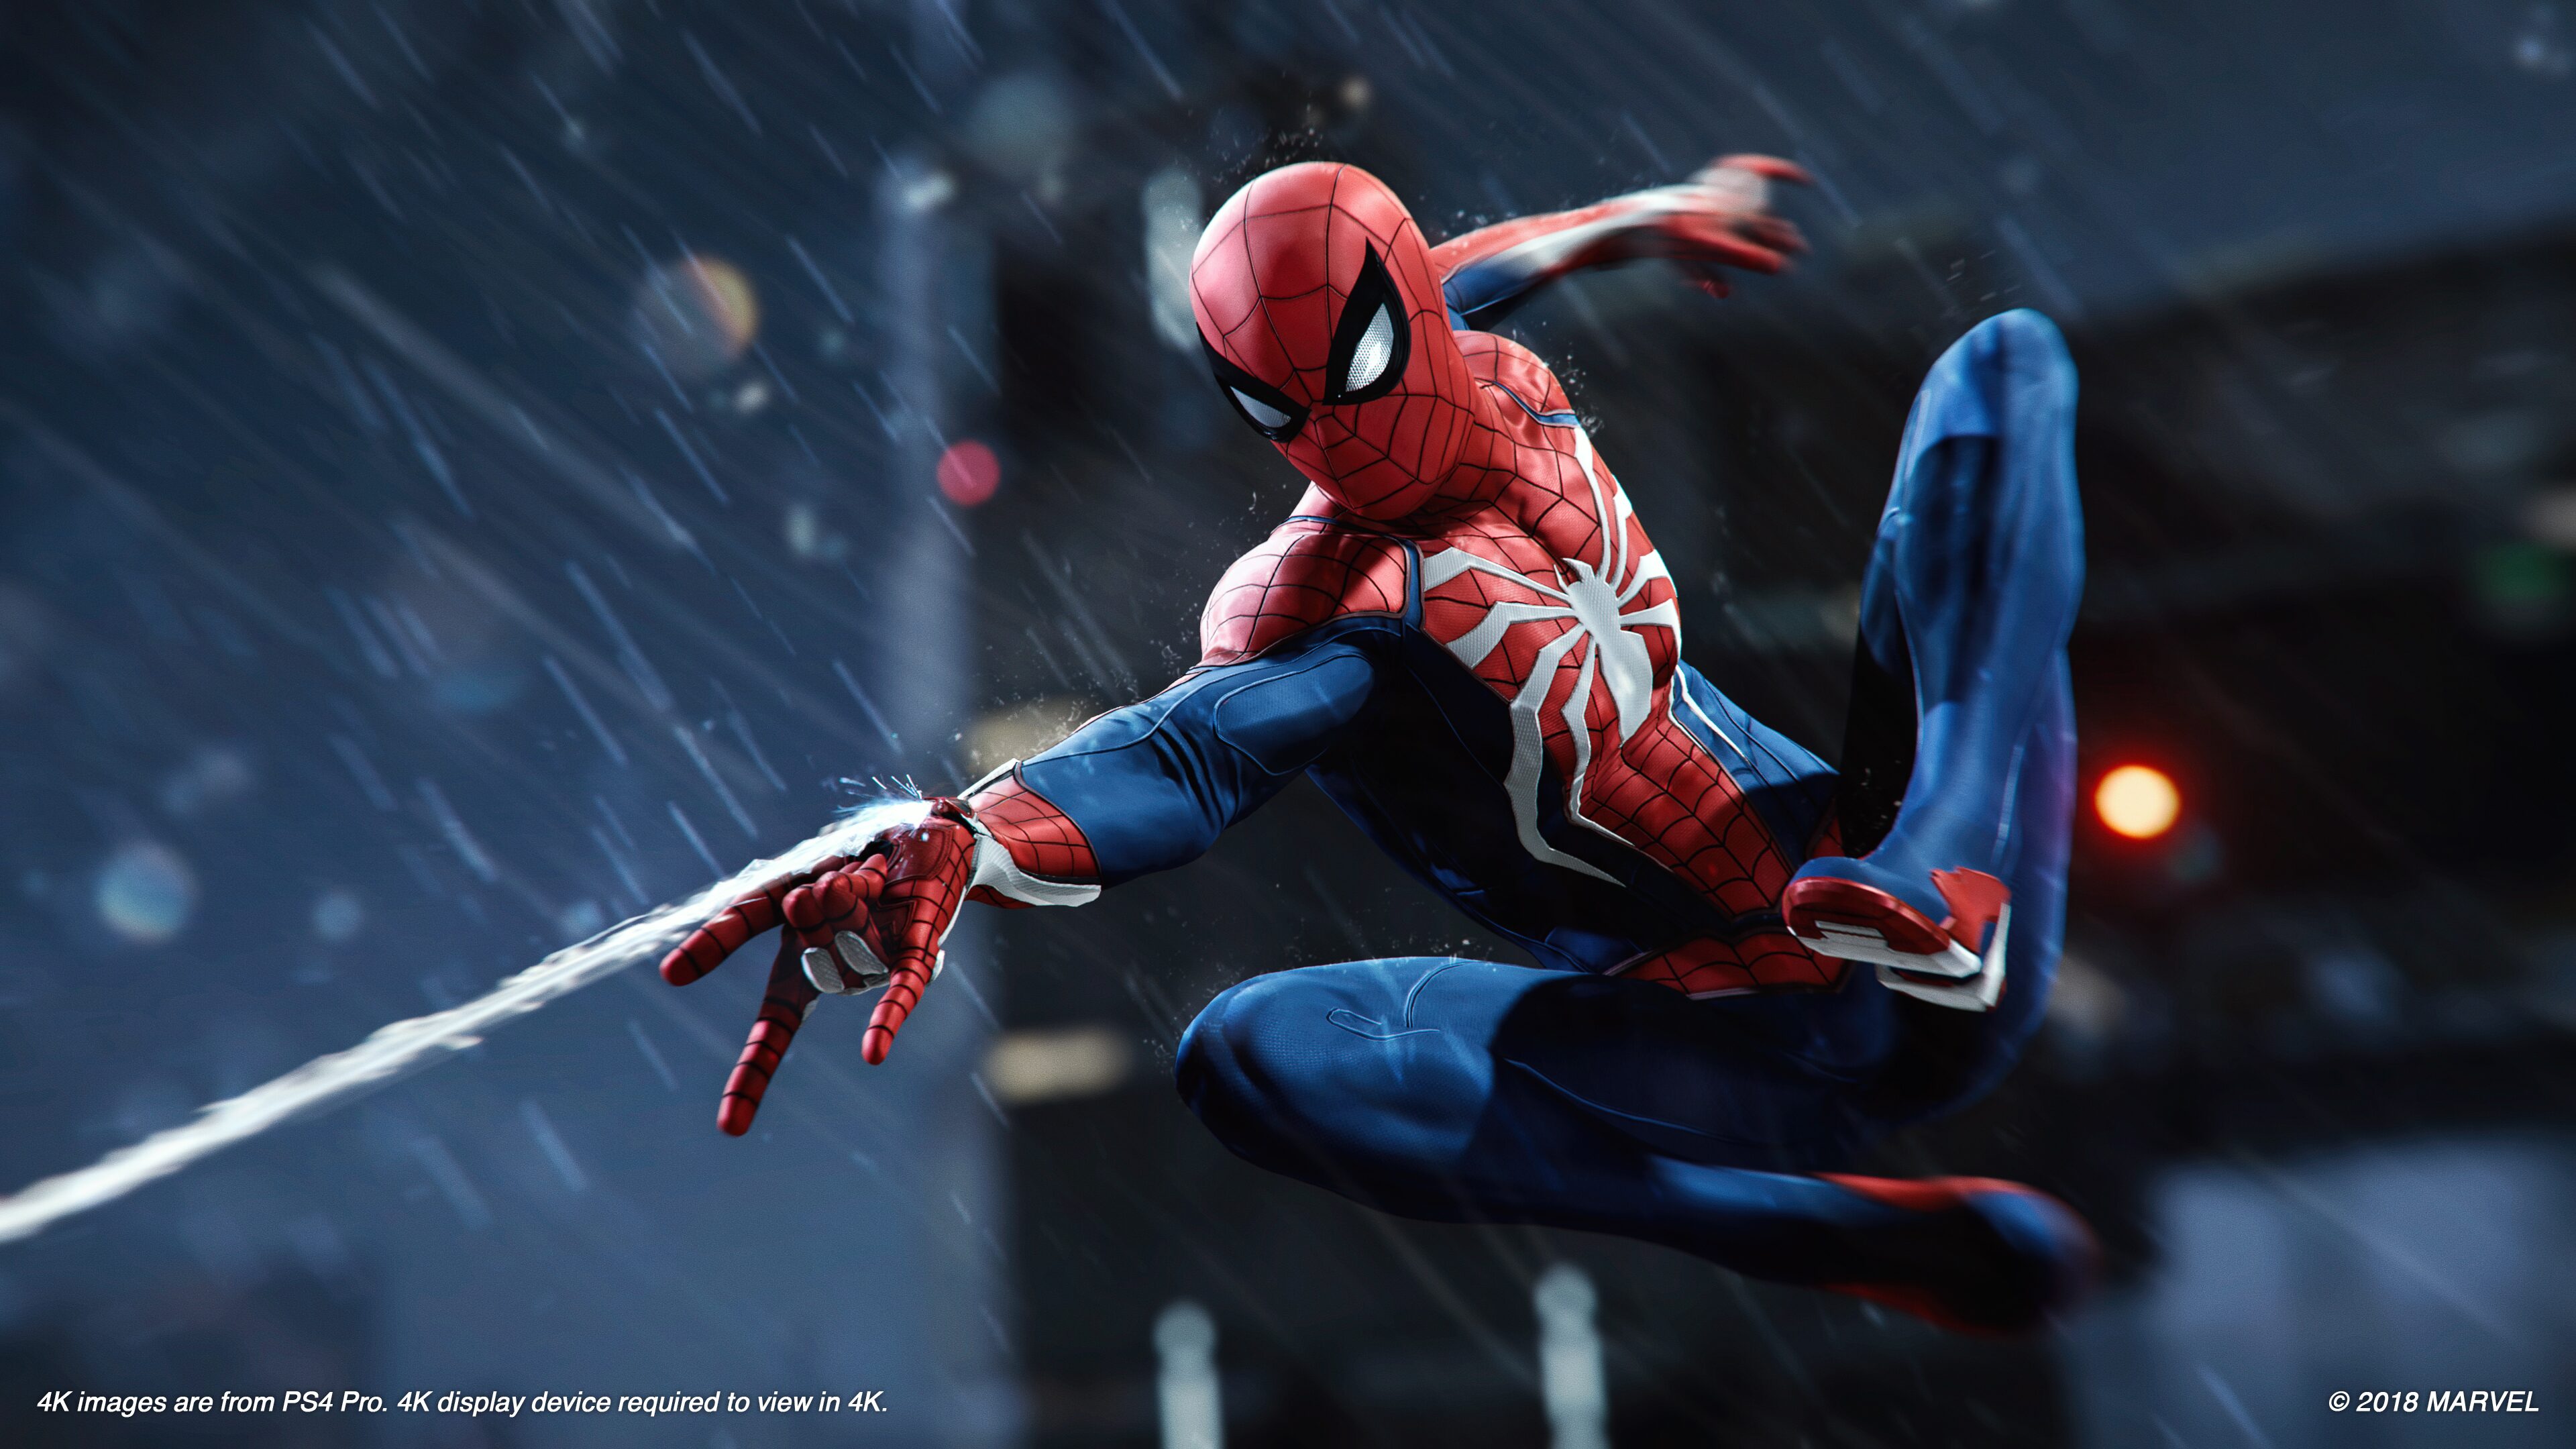 Edición Juego del Año de Marvel's Spider-Man